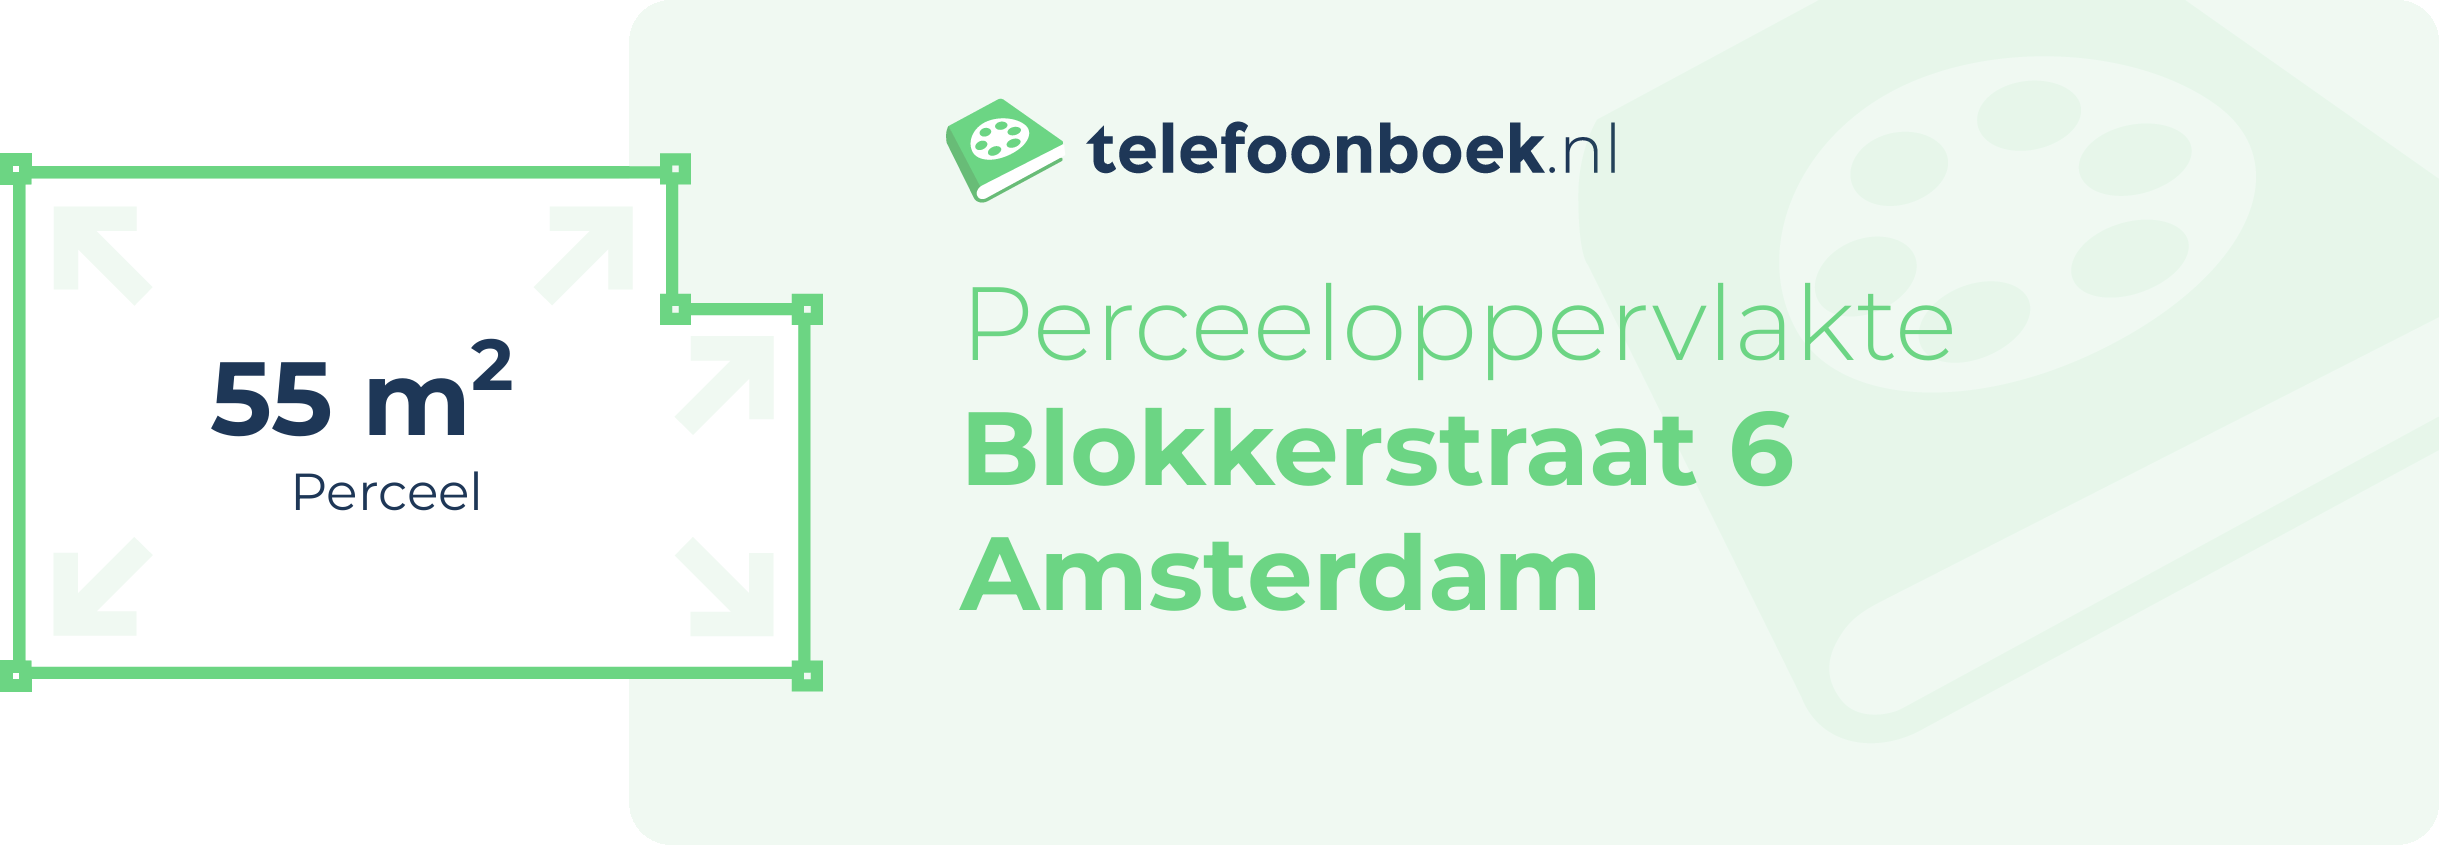 Perceeloppervlakte Blokkerstraat 6 Amsterdam